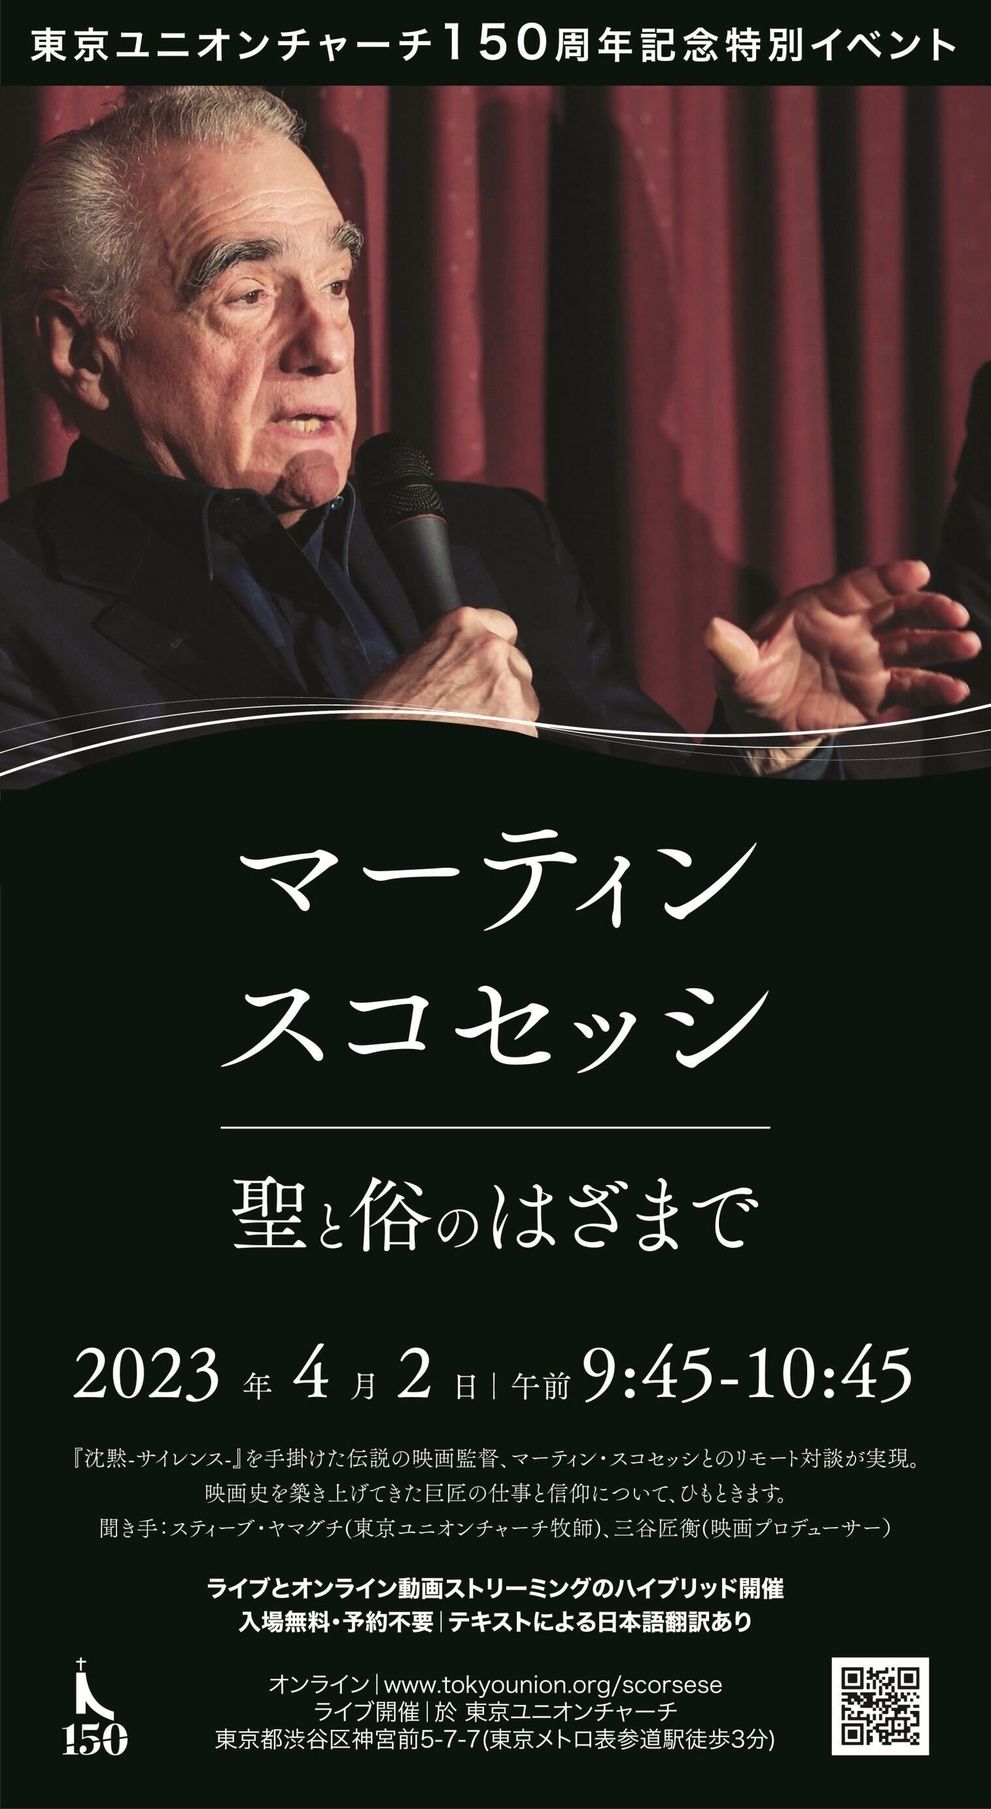 マーティン・スコセッシとのリモート対談イベント、4月2日開催　東京ユニオンチャーチ150周年記念